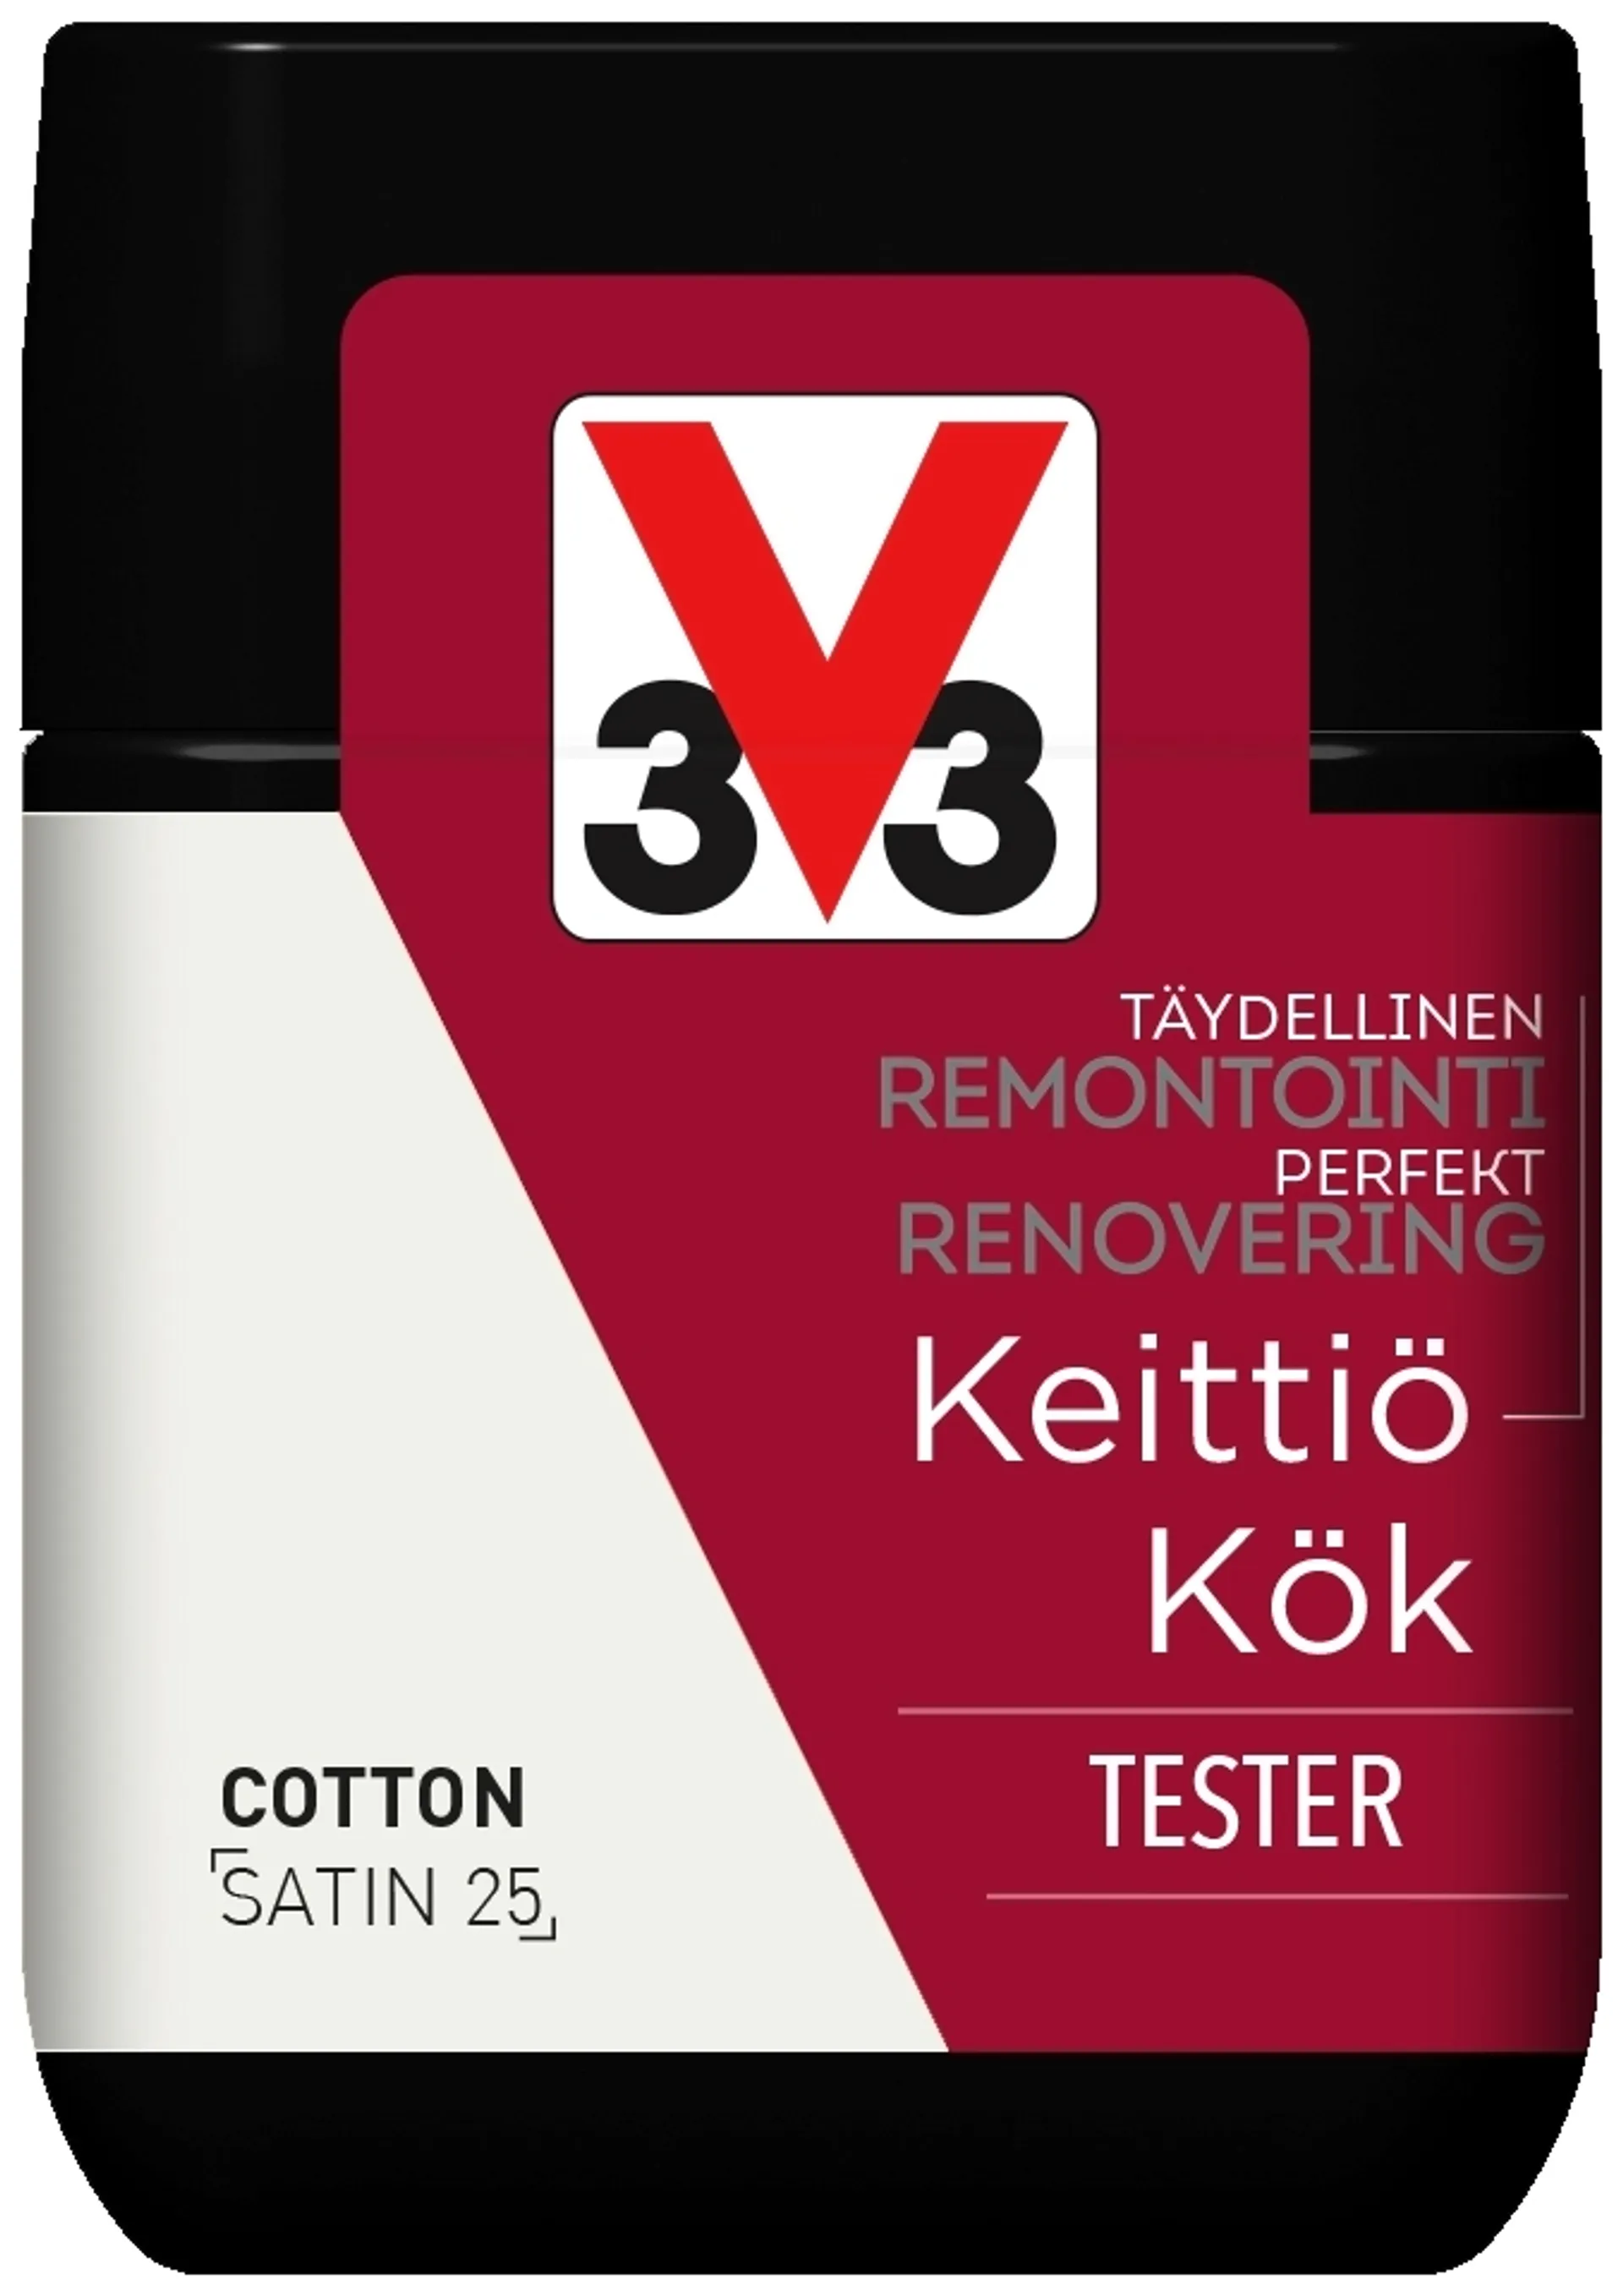 V33 Remontointimaali keittiö tester 75ml Cotton